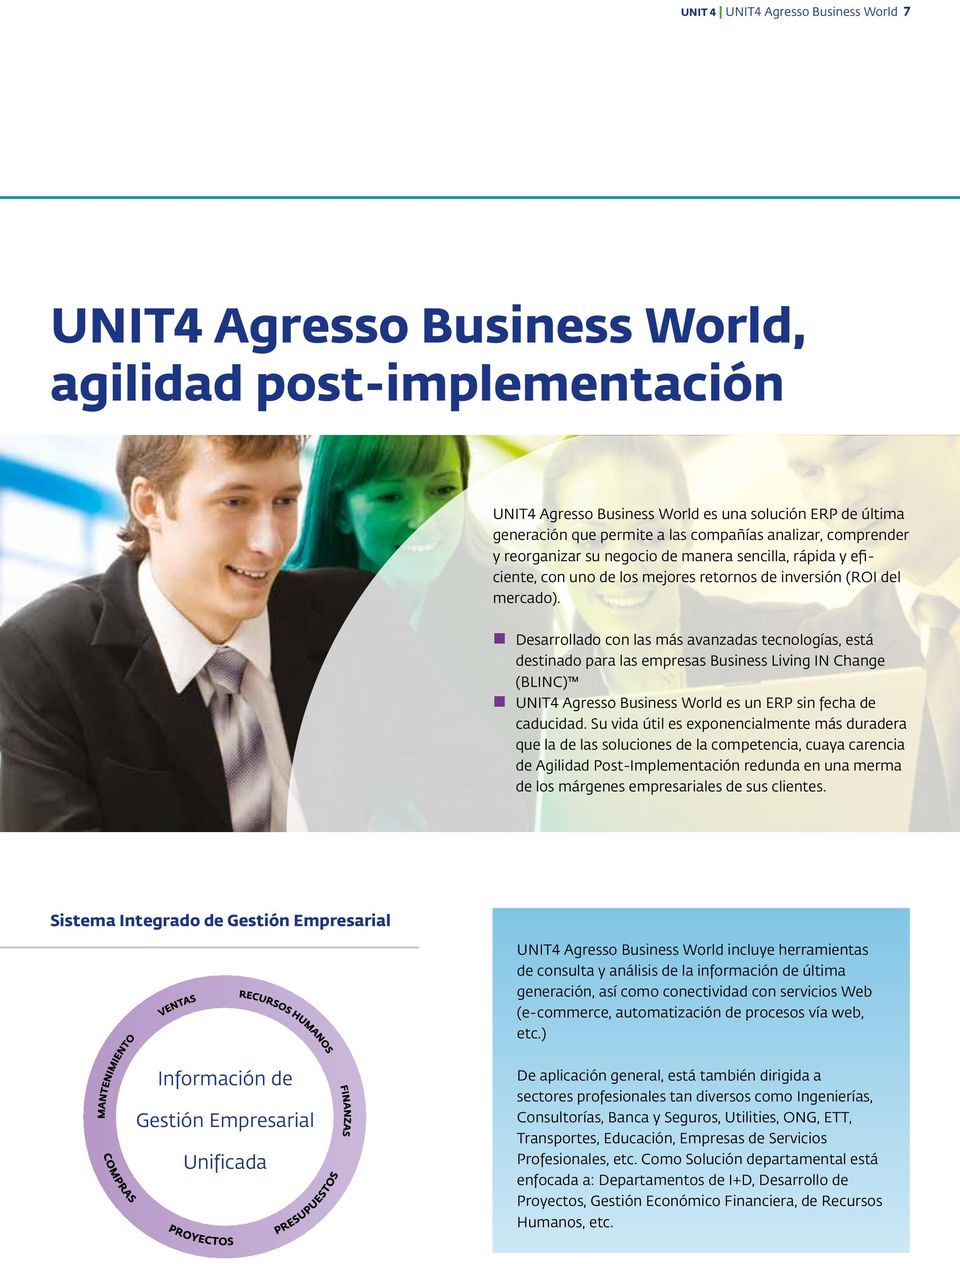 Desarrollado con las más avanzadas tecnologías, está destinado para las empresas Business Living IN Change (BLINC) UNIT4 Agresso Business World es un ERP sin fecha de caducidad.